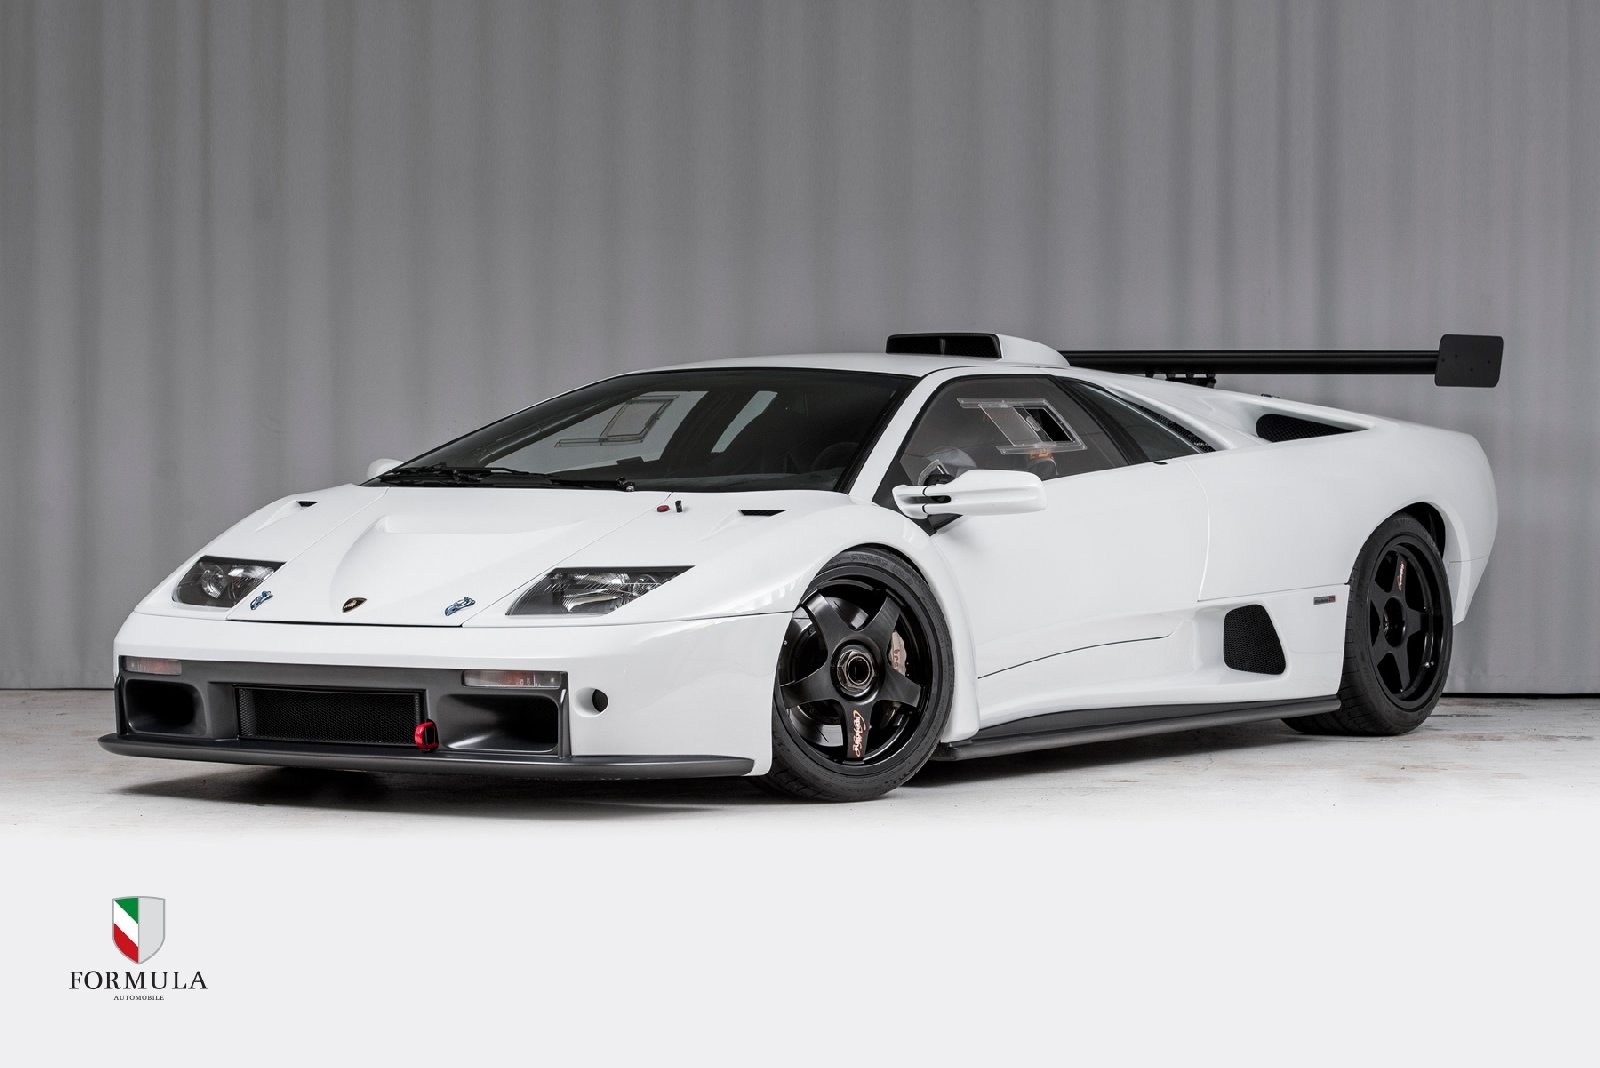 There's a rare Lamborghini Diablo GTR for sale